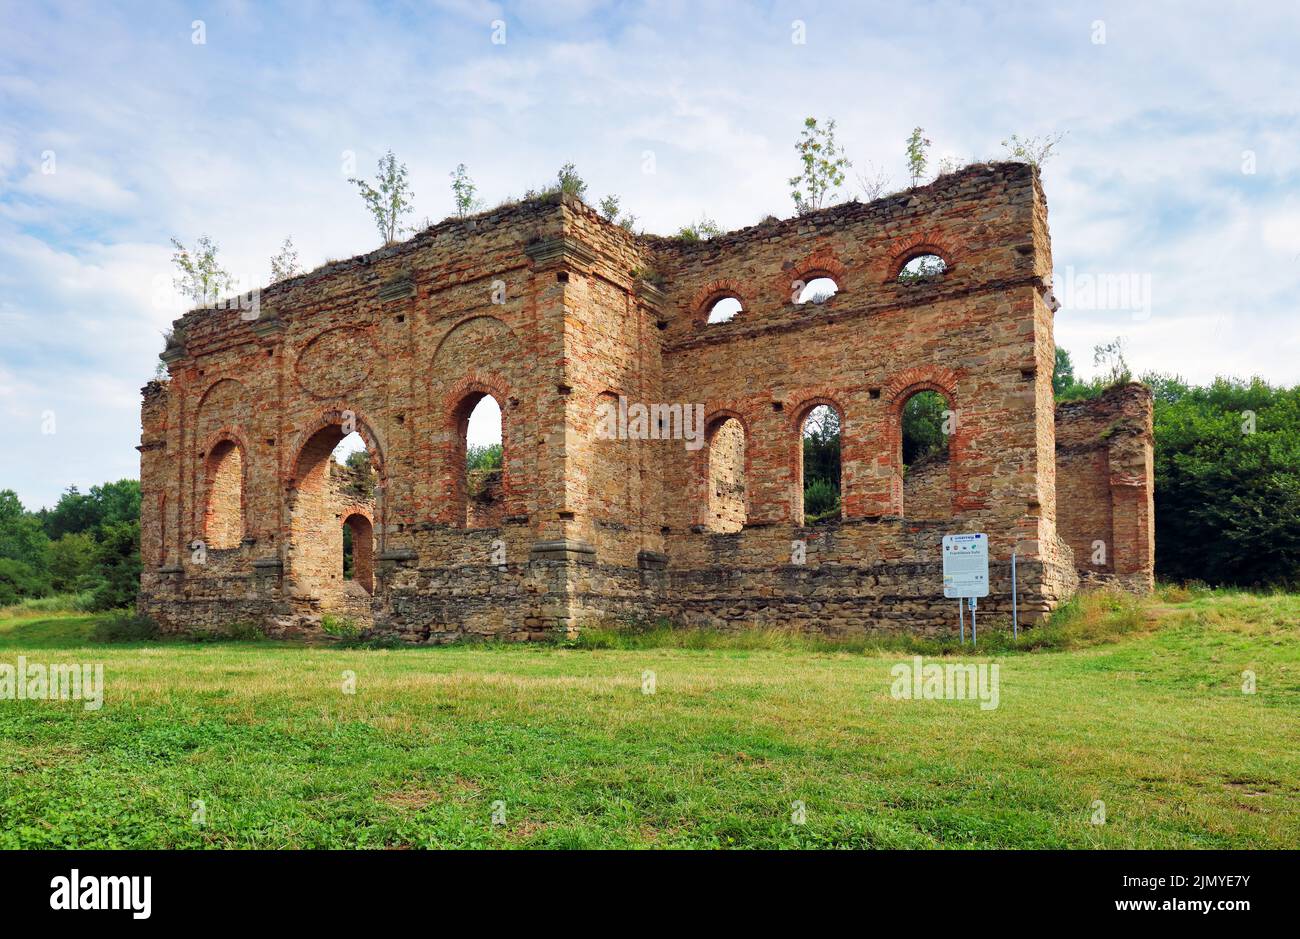 Ruines d'une usine de fusion de fer, Podbiel, république slovaque. Thème architectural - Frantiskova huta Banque D'Images